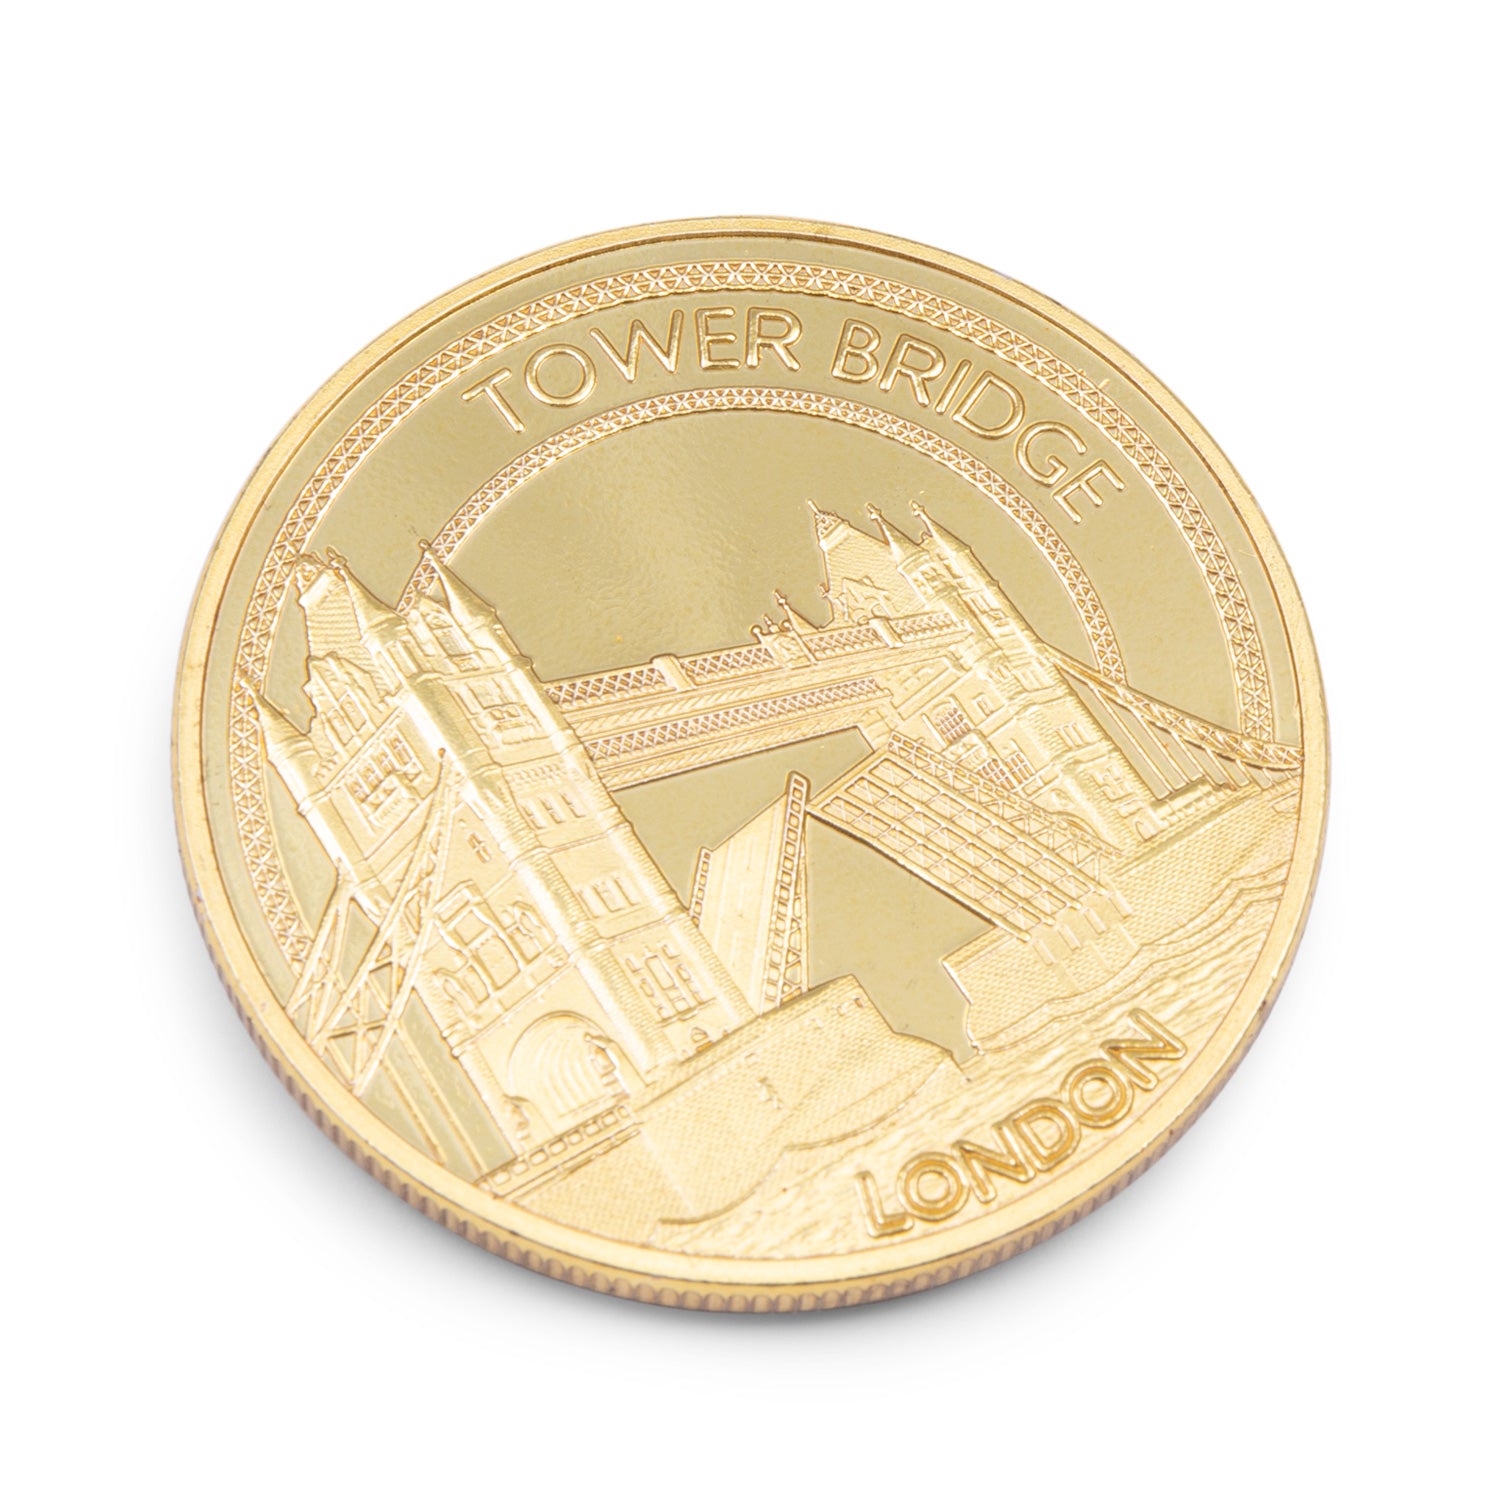 Tower Bridge Gold Medal Coin Fridge Magnet 3